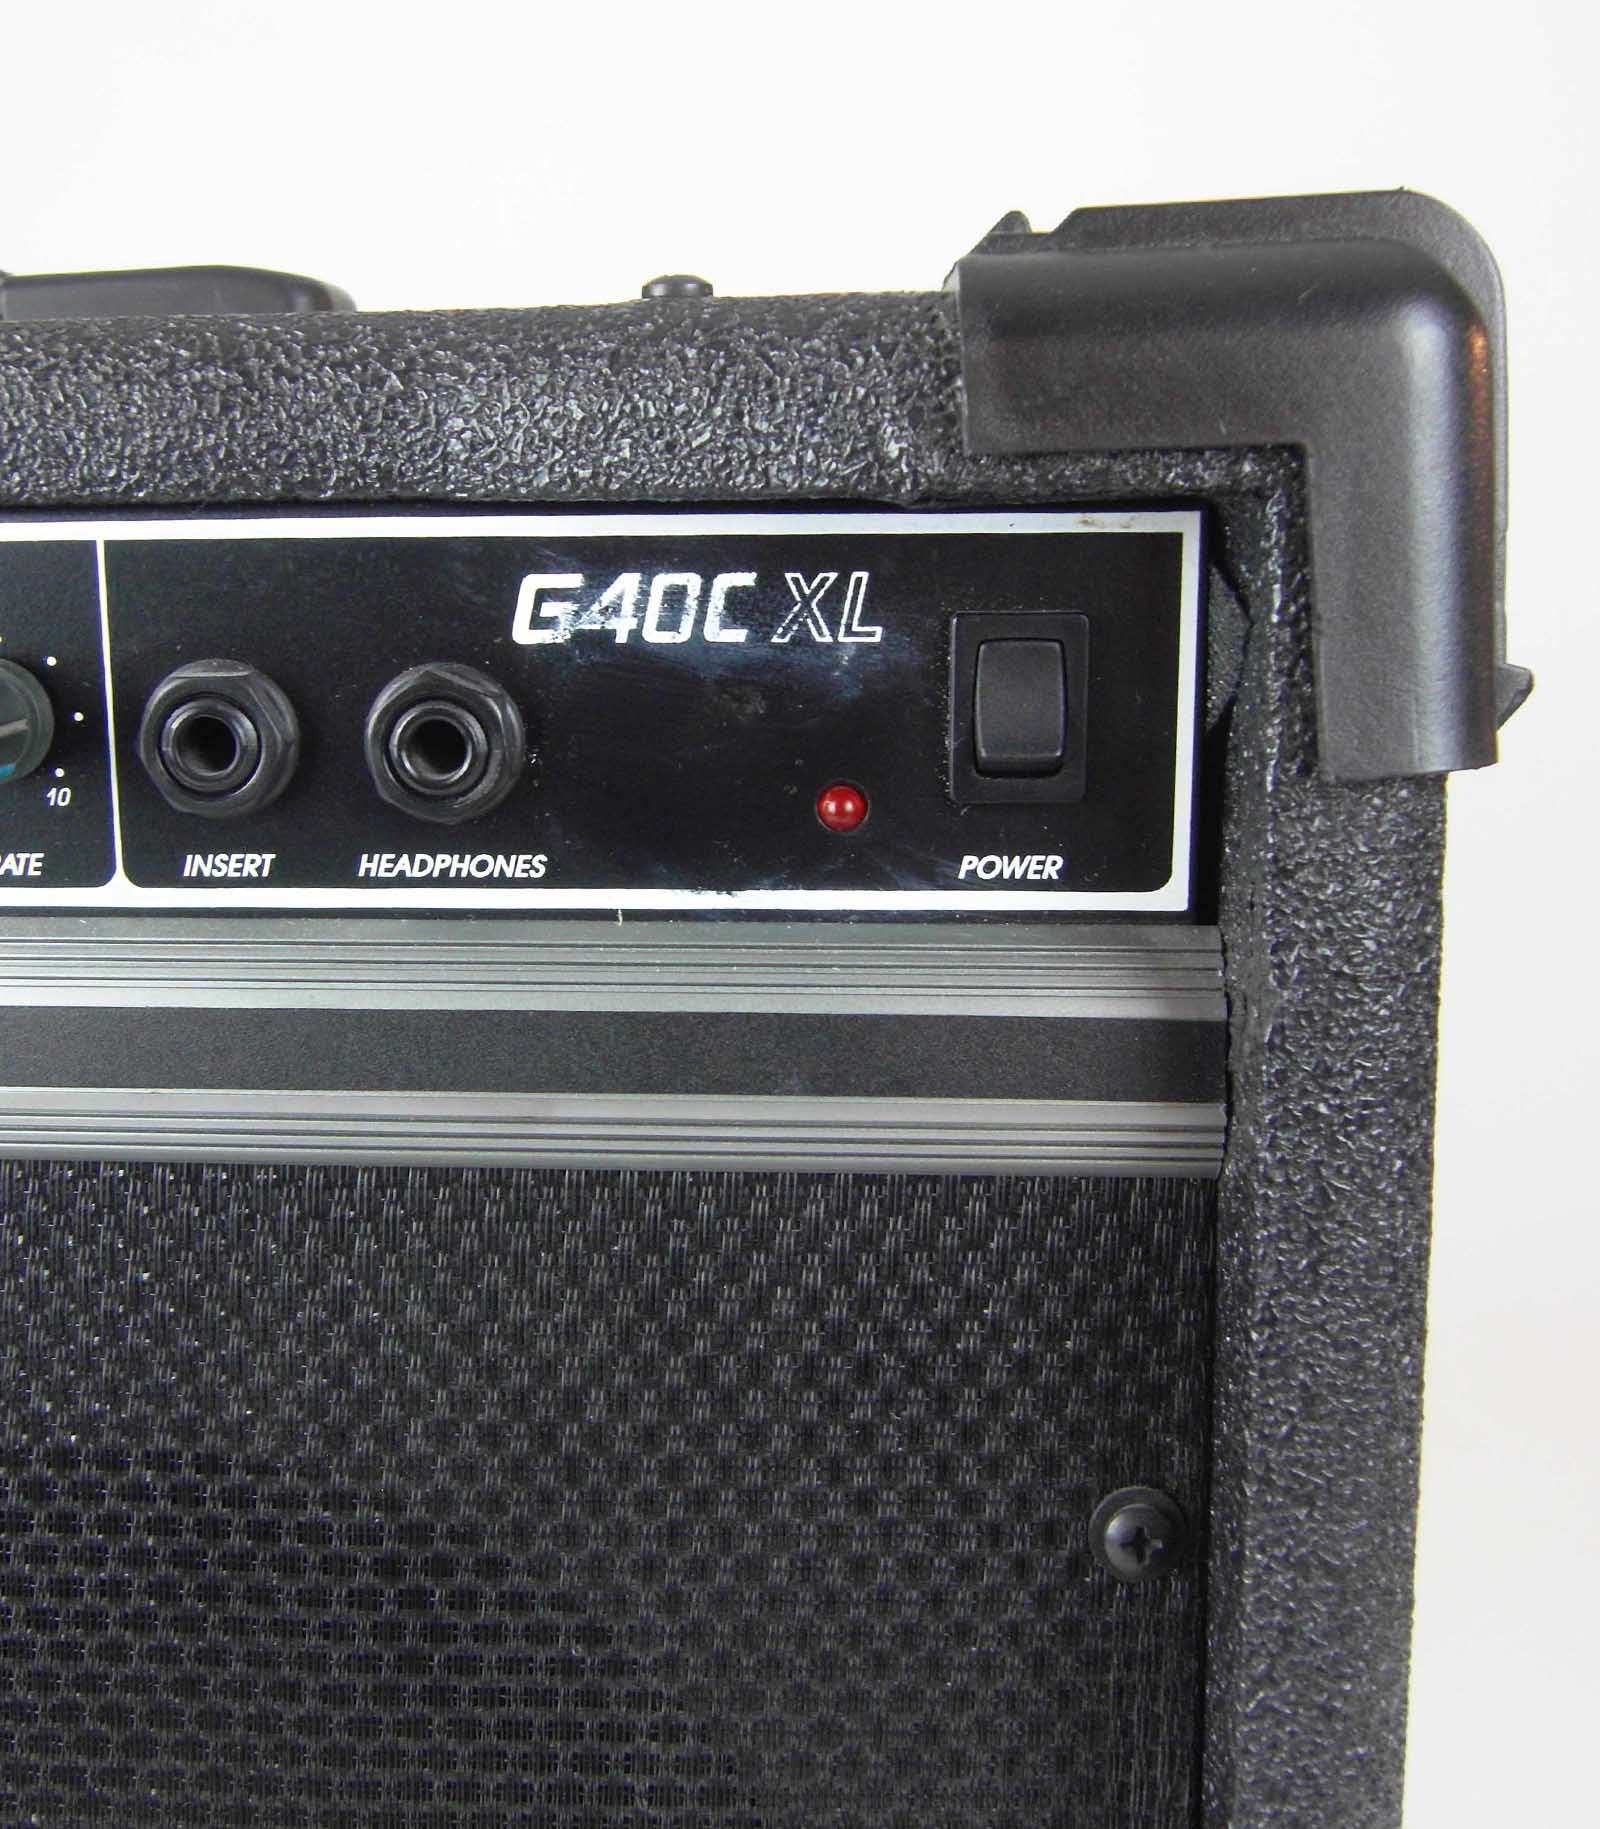 Gitarrenverstärker Crate G40C XL, neu aus Ladenauflösung, Beschriftung etwas verschmiert